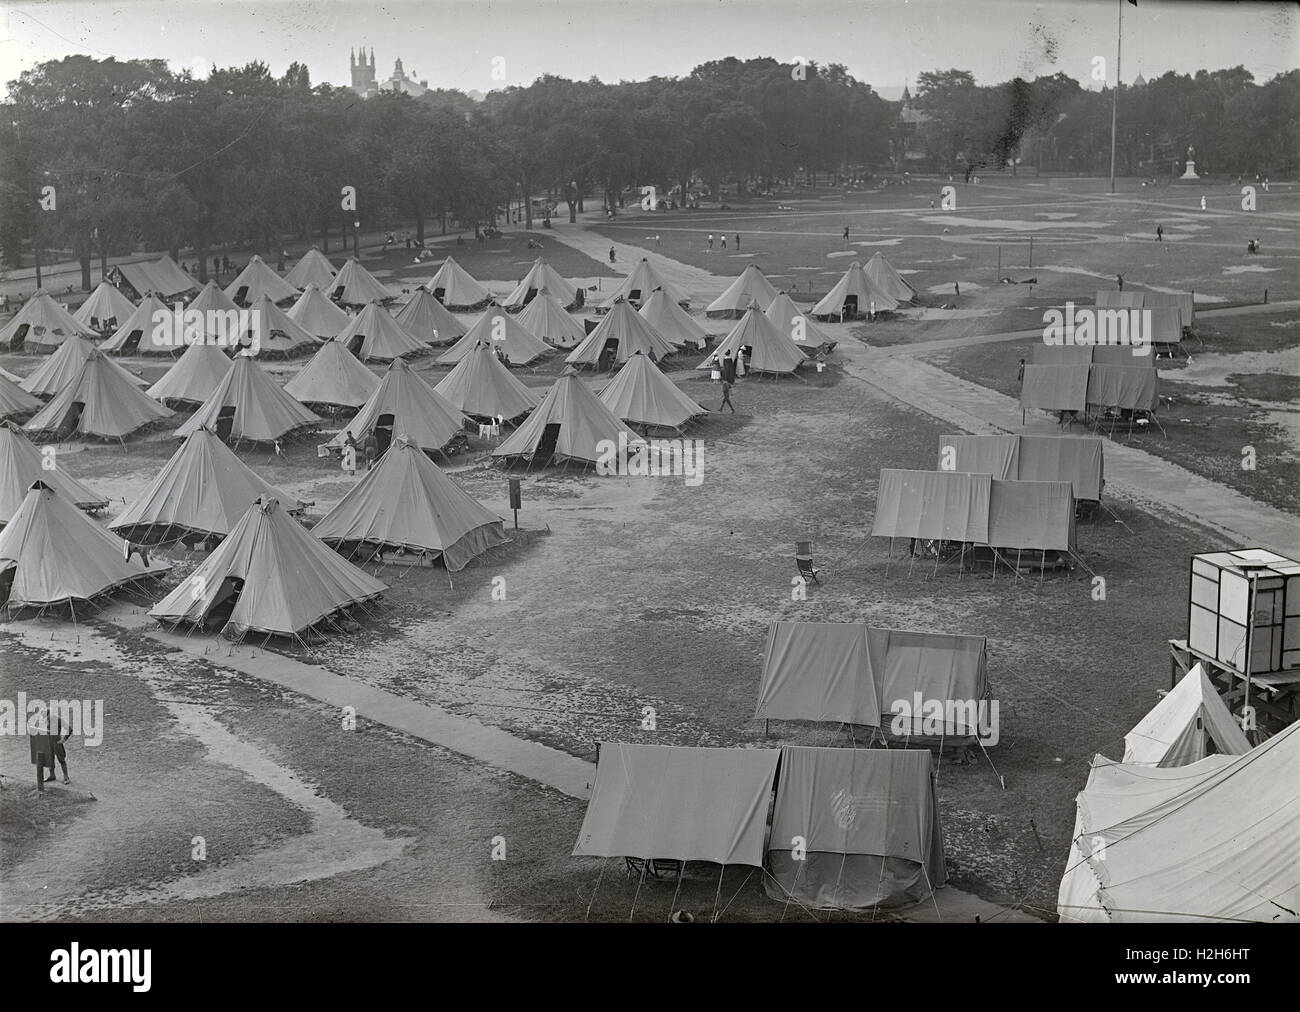 Antique circa 1917 fotografia, esercito nazionale Guard encampment, posizione sconosciuta ma possibilmente in Massachusetts. Fonte: originale negativo fotografico. Foto Stock